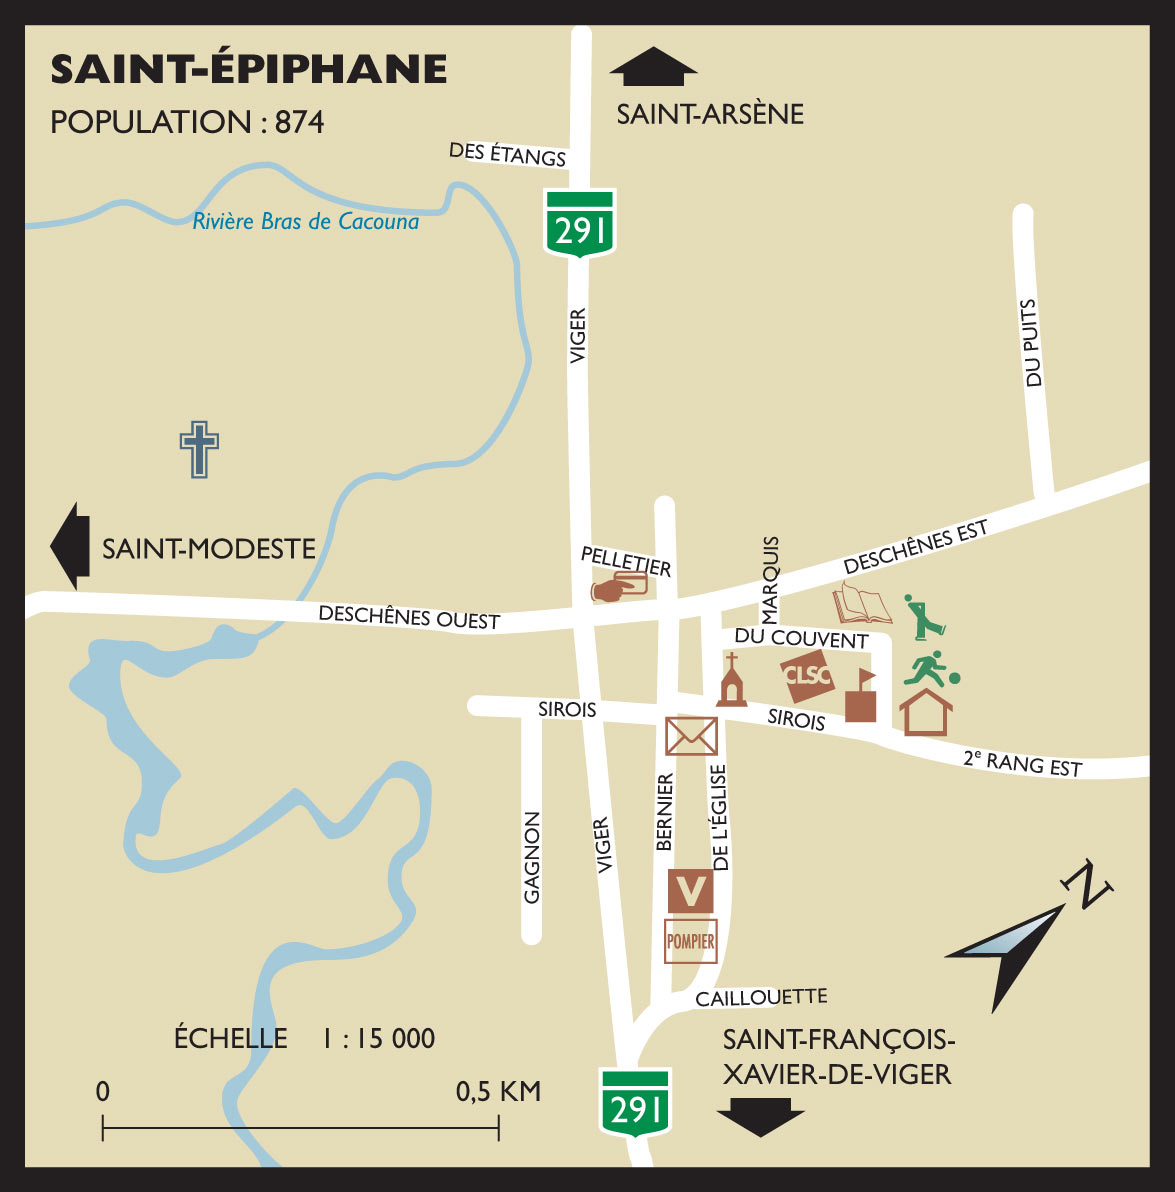 SAINT-EPIPHANE